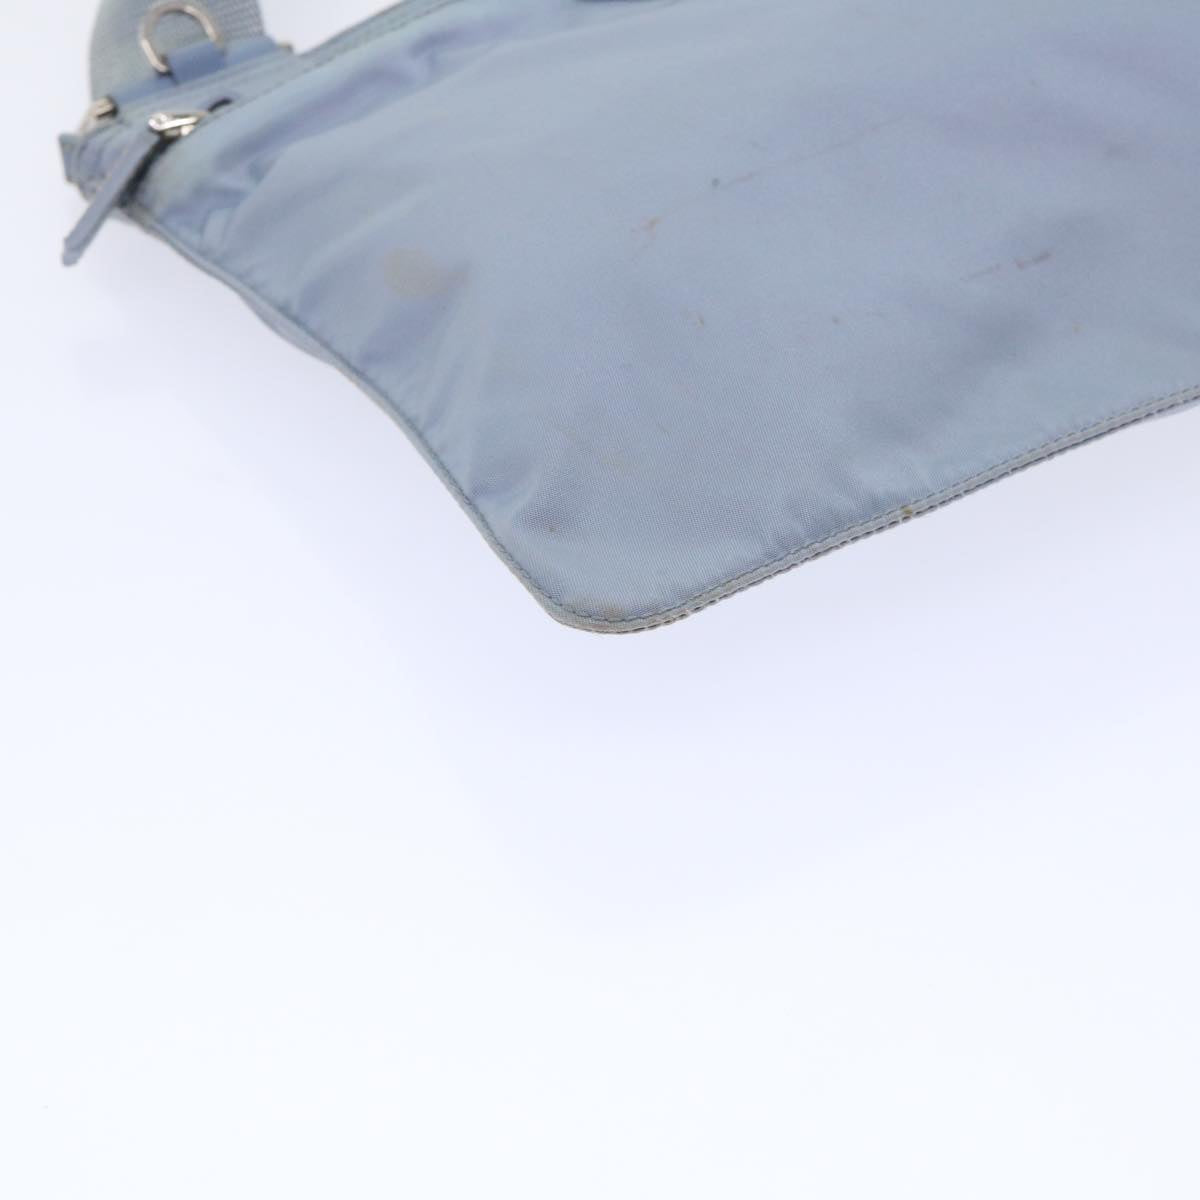 PRADA Shoulder Bag Nylon Light Blue Auth bs7685